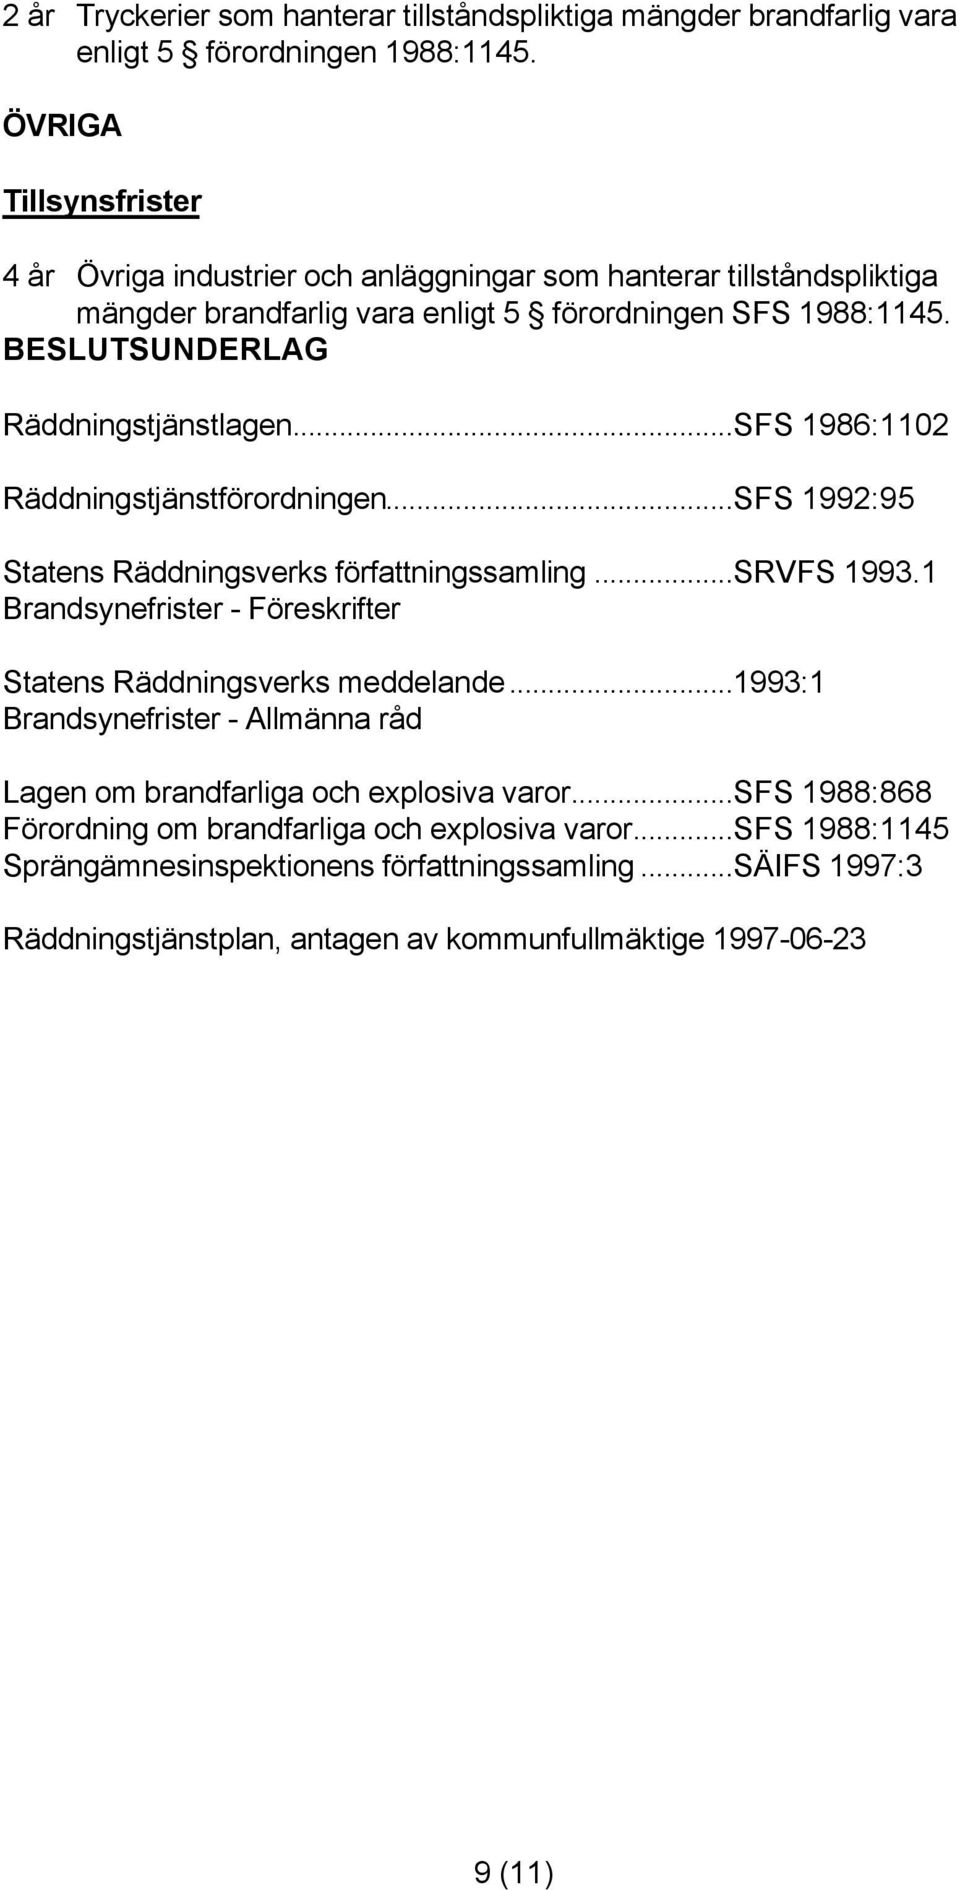 BESLUTSUNDERLAG Räddningstjänstlagen...SFS 1986:1102 Räddningstjänstförordningen...SFS 1992:95 Statens Räddningsverks författningssamling...srvfs 1993.